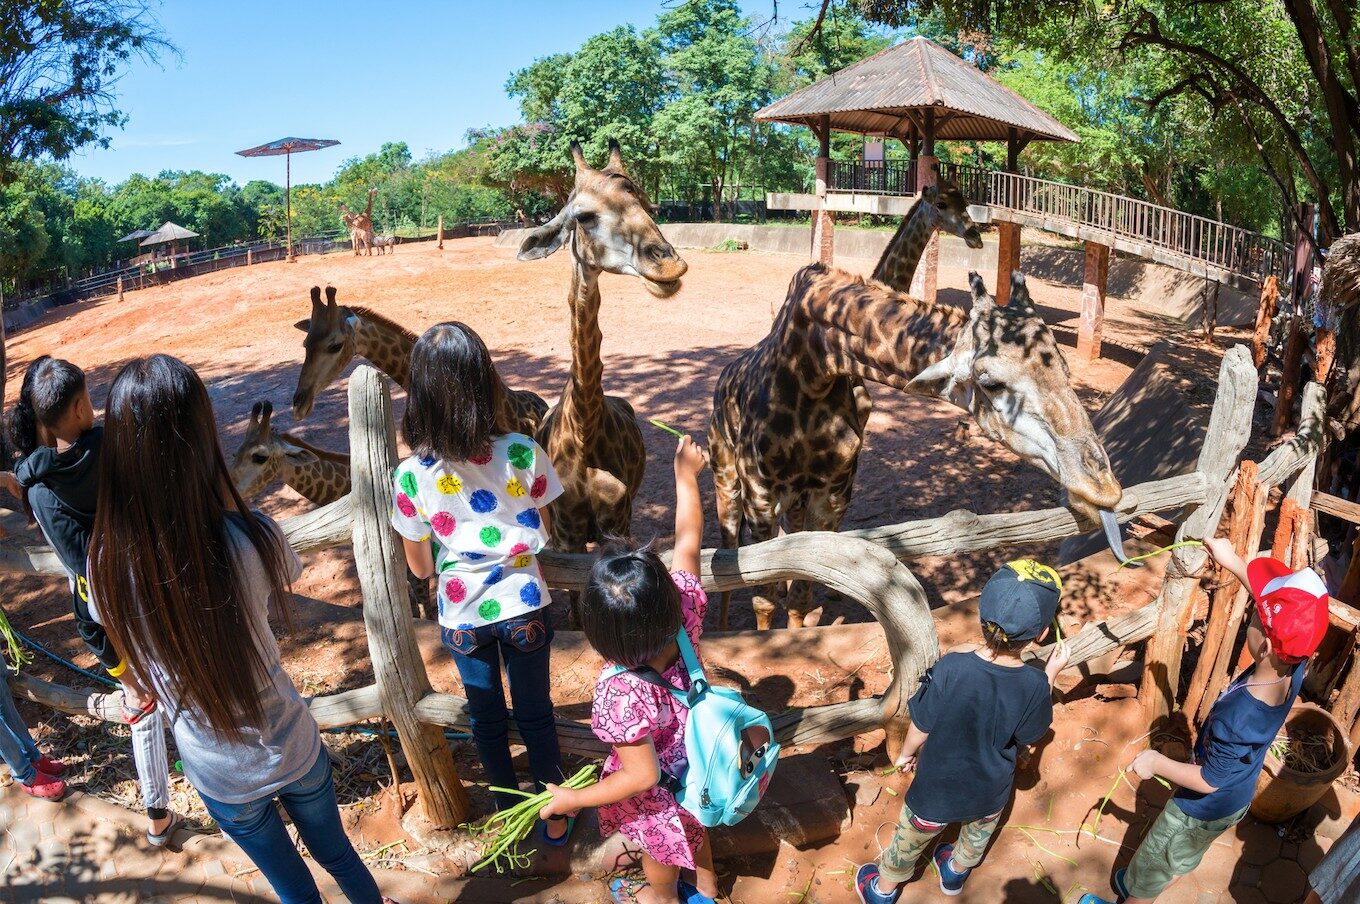 จัดกิจกรรมวันเฉลิมพระชนมพรรษา 28 ก.ค.นี้ เปิดสวนสัตว์ให้เด็กเข้าฟรีทั่วประเทศ